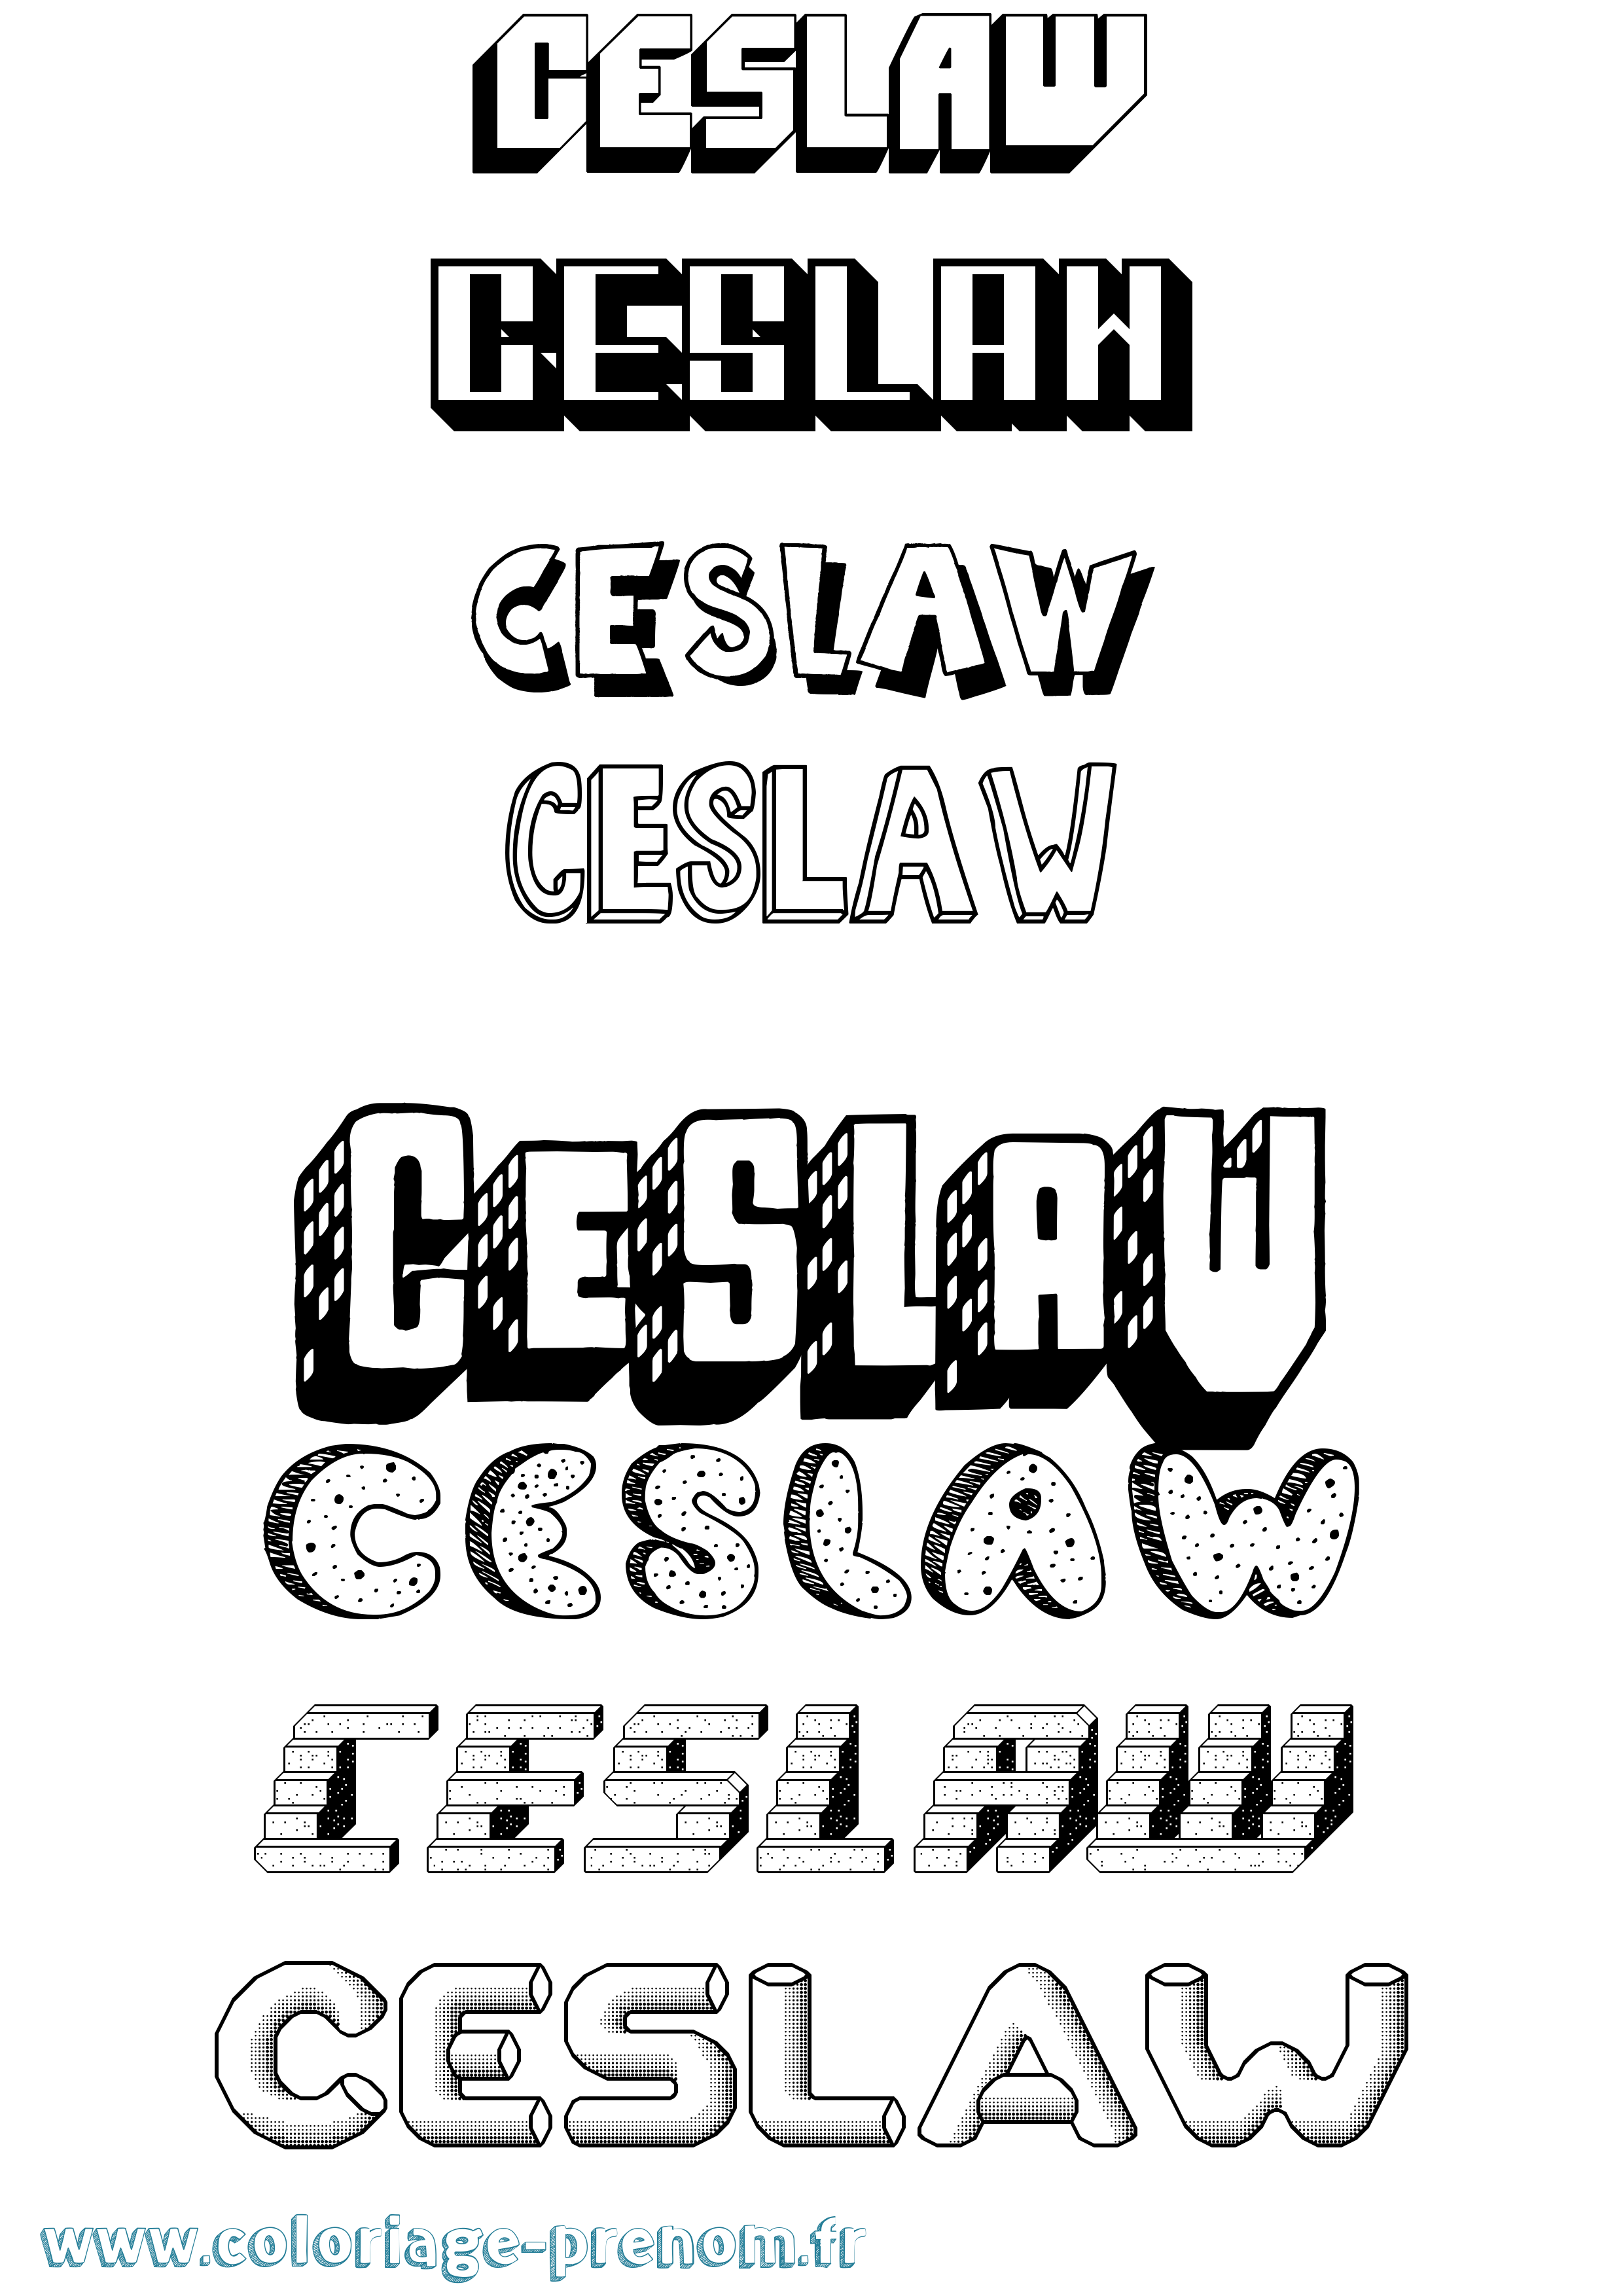 Coloriage prénom Ceslaw Effet 3D